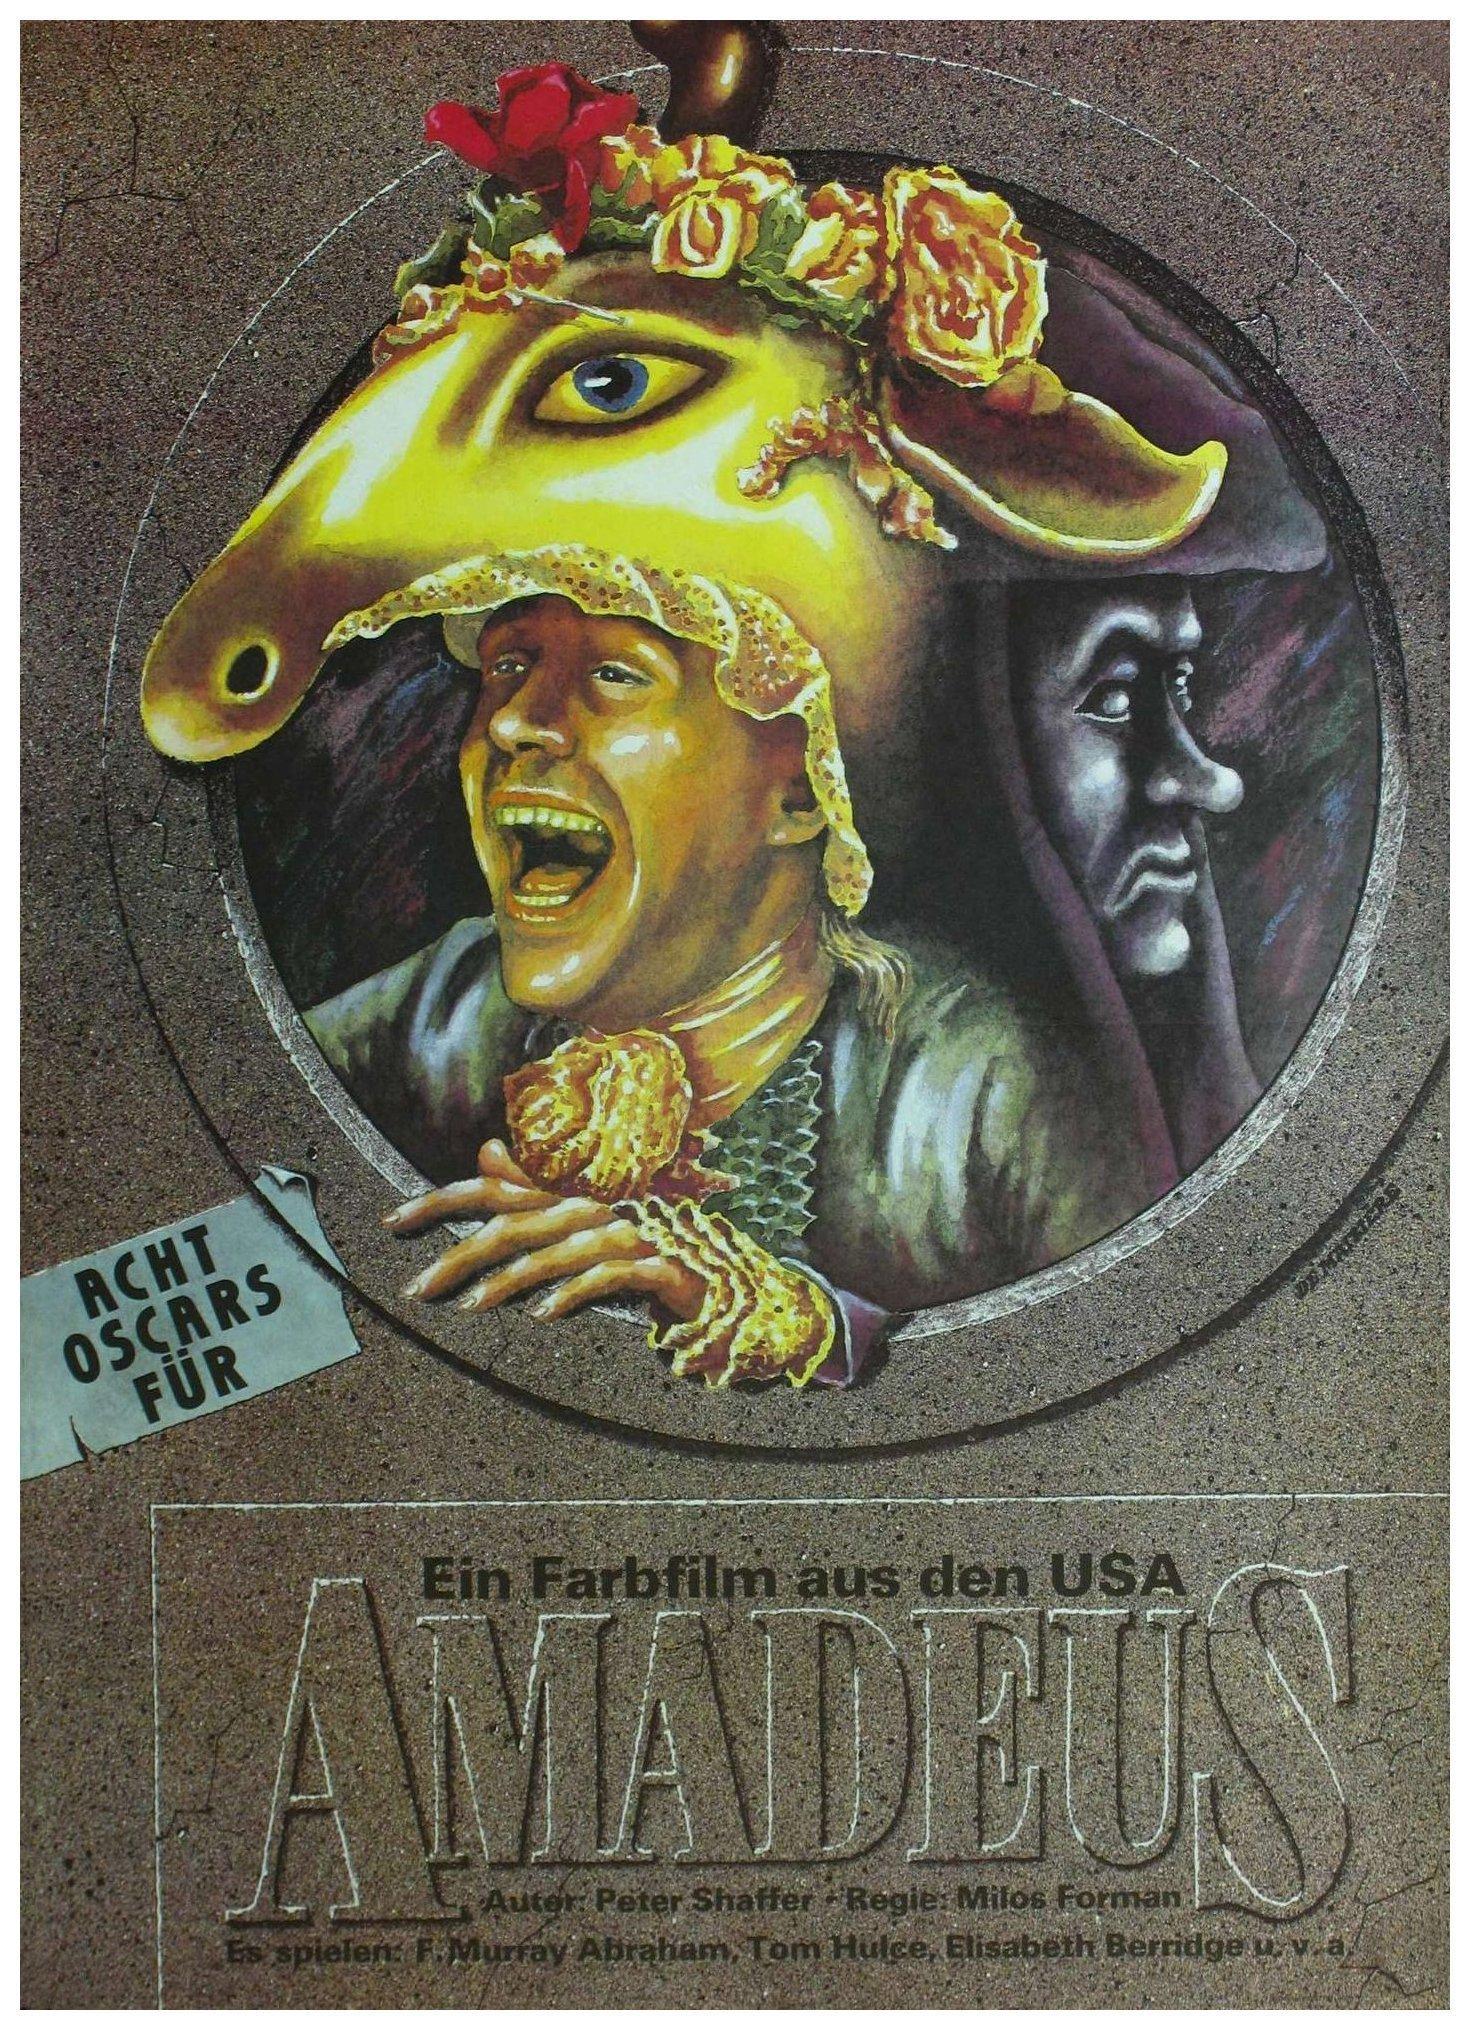 Постер фильма Амадей | Amadeus